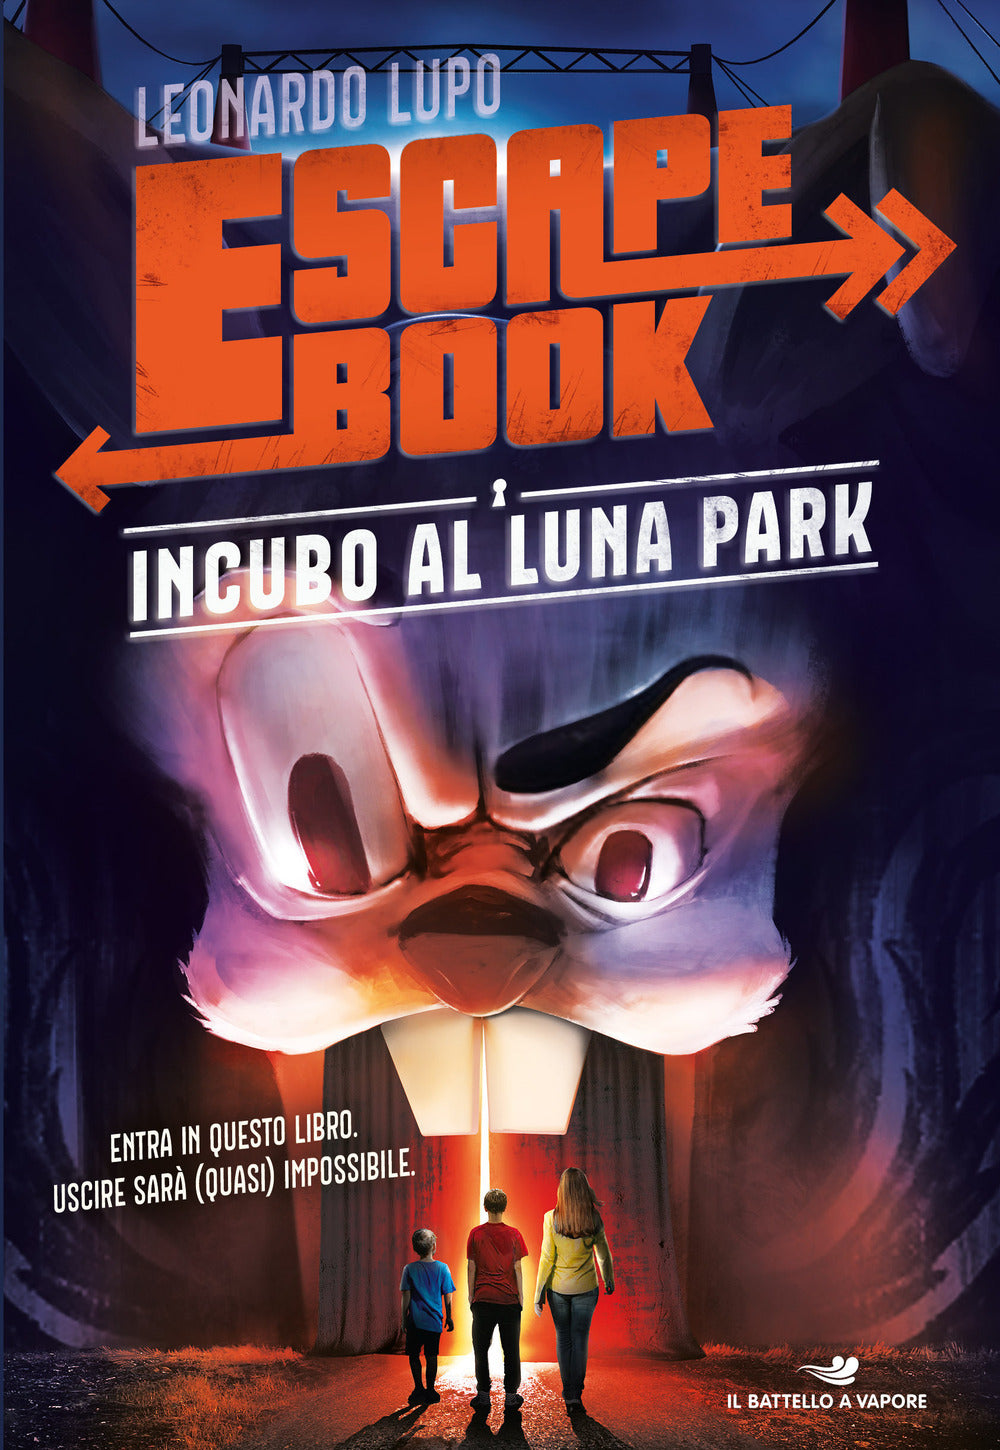 Incubo al luna park - Escape book